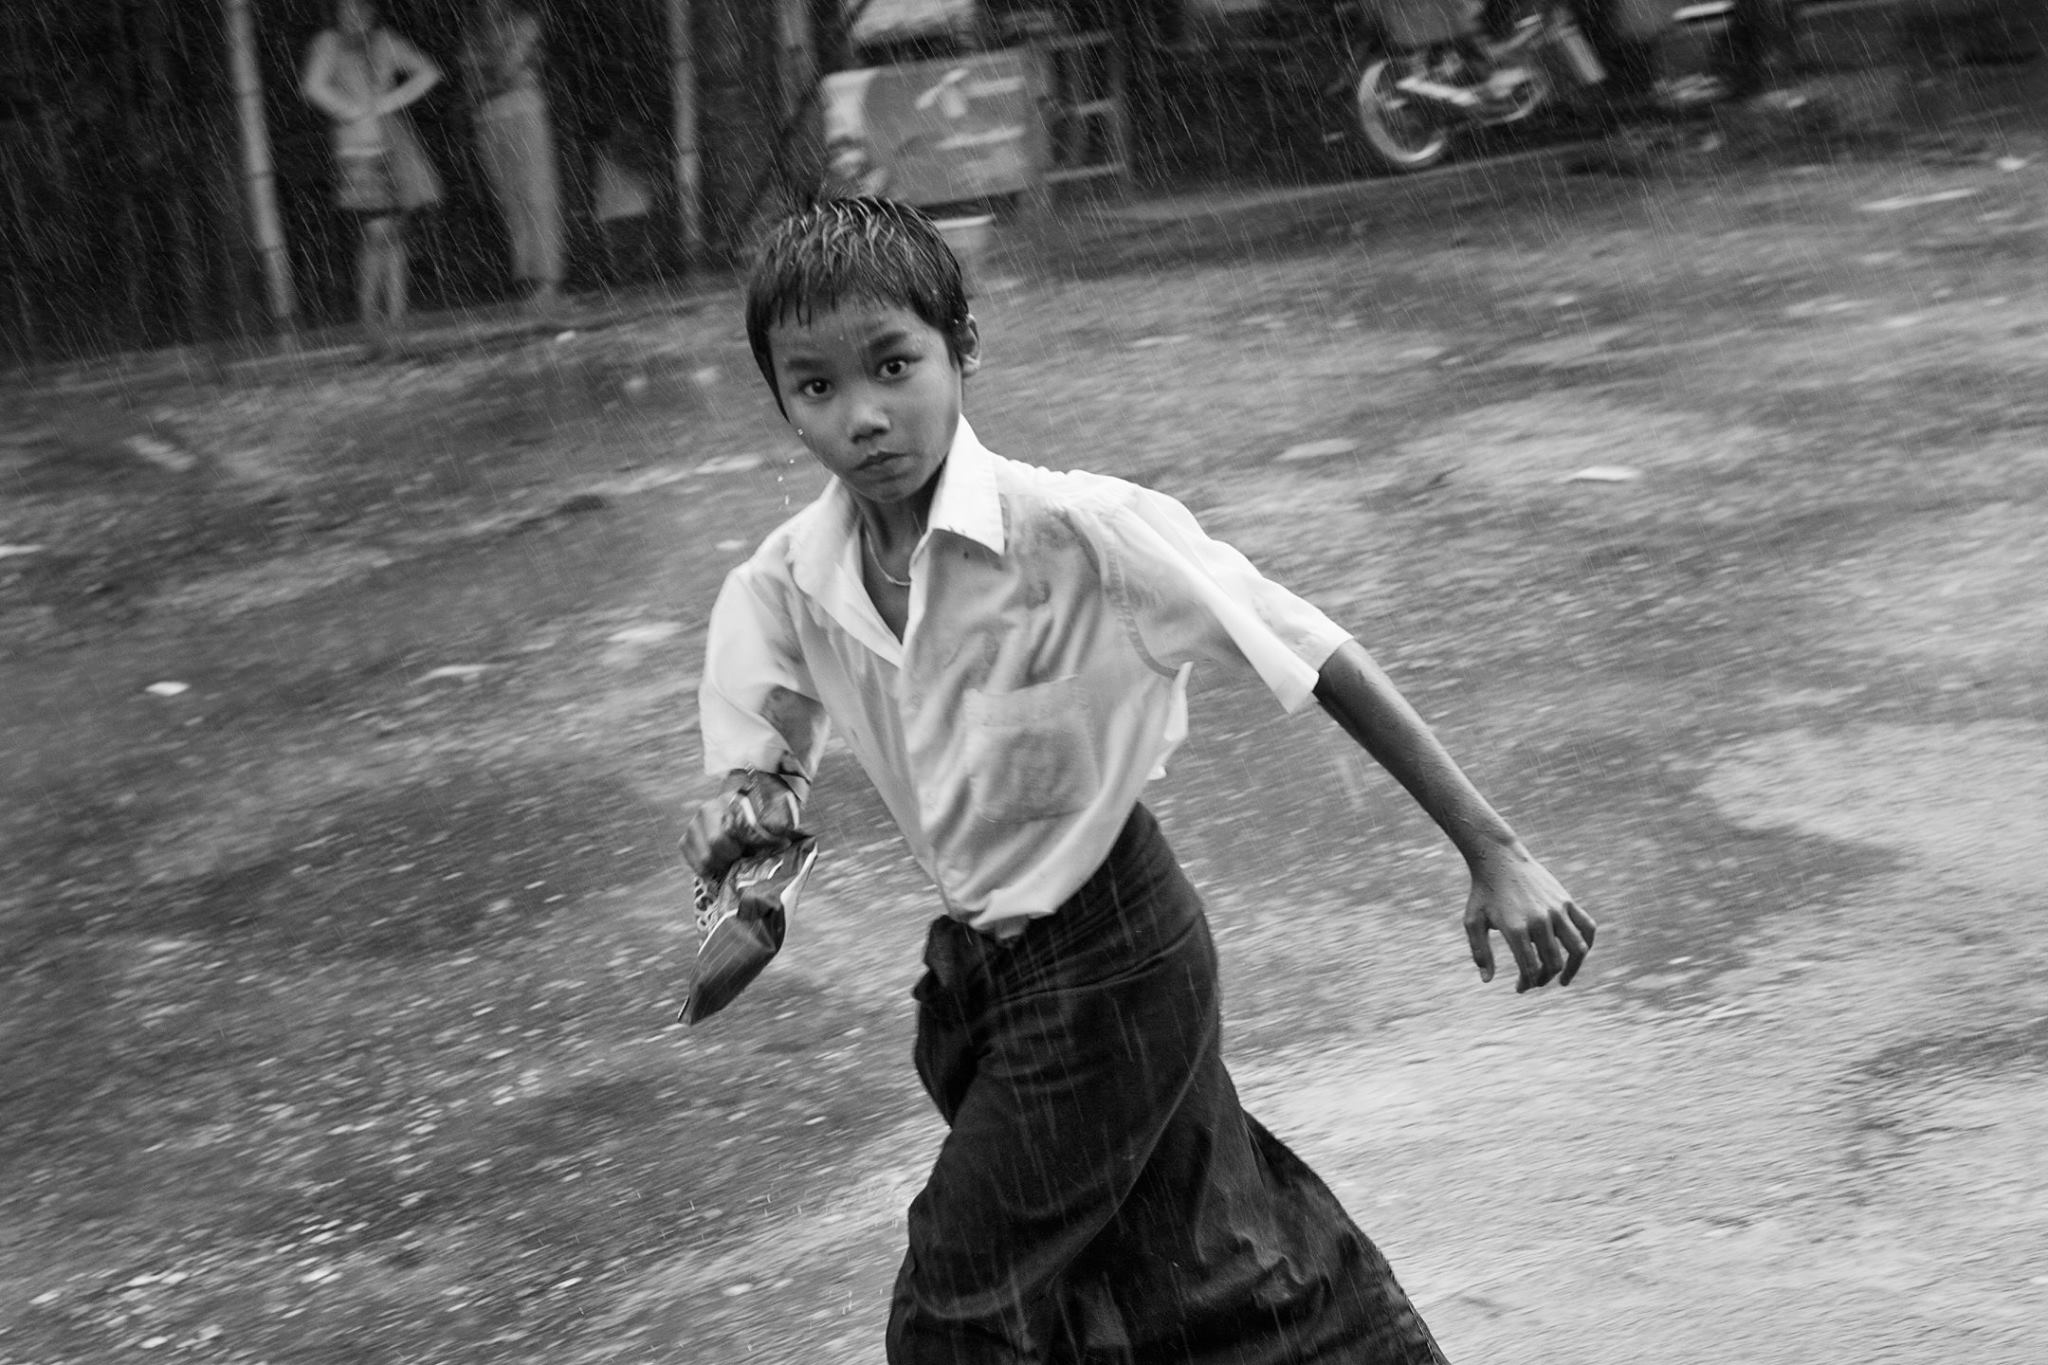 Myanmarportraits0